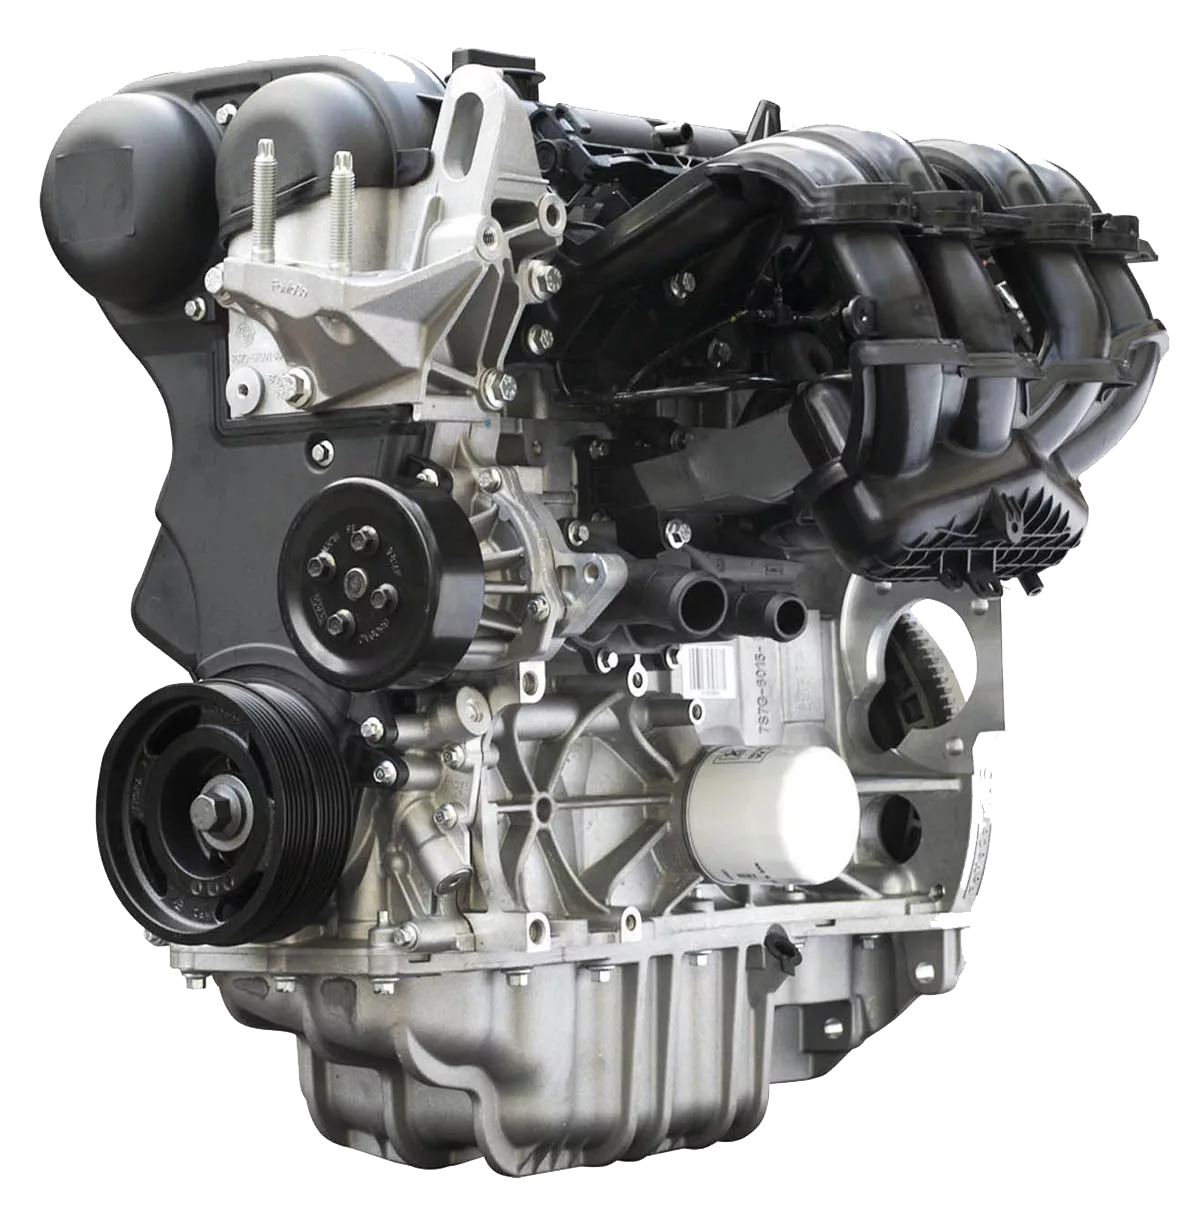 Duratec ti vct sigma. Двигатель Форд фокус 1.6 Duratec. Duratec 1.6 ti-VCT 115 Л.С. Двигатель Форд фокус 1 1.6. Мотор Форд фокус 2 1.6 100 л.с.